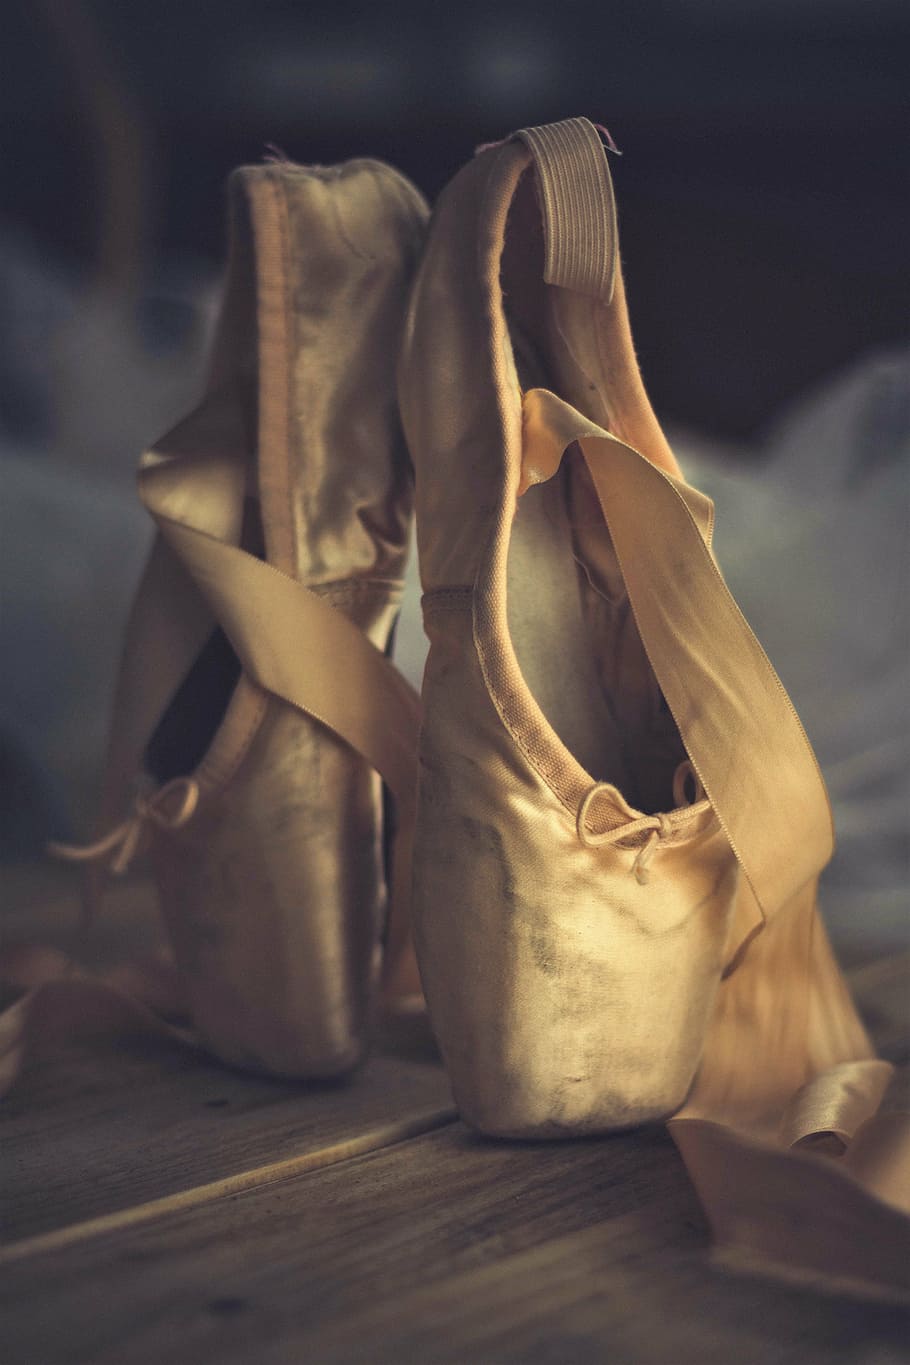 pair, ballet shoes, slipper, dance, ballet, foot, classical, dancing, dancer, ballet dancer